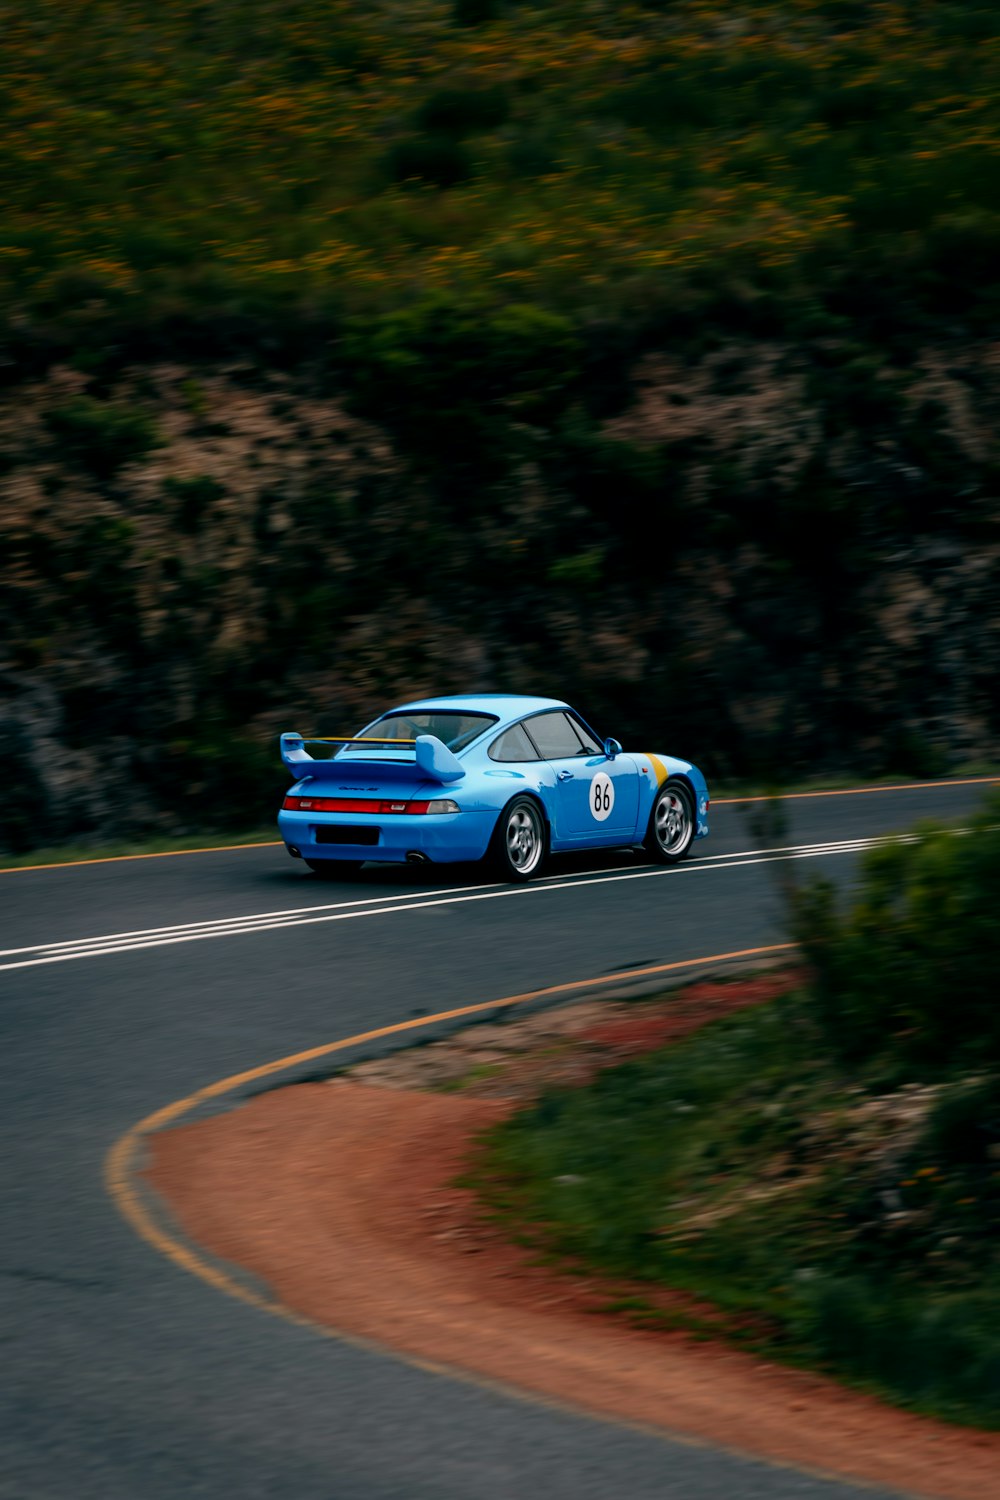 Une voiture de sport bleue roulant sur une route sinueuse